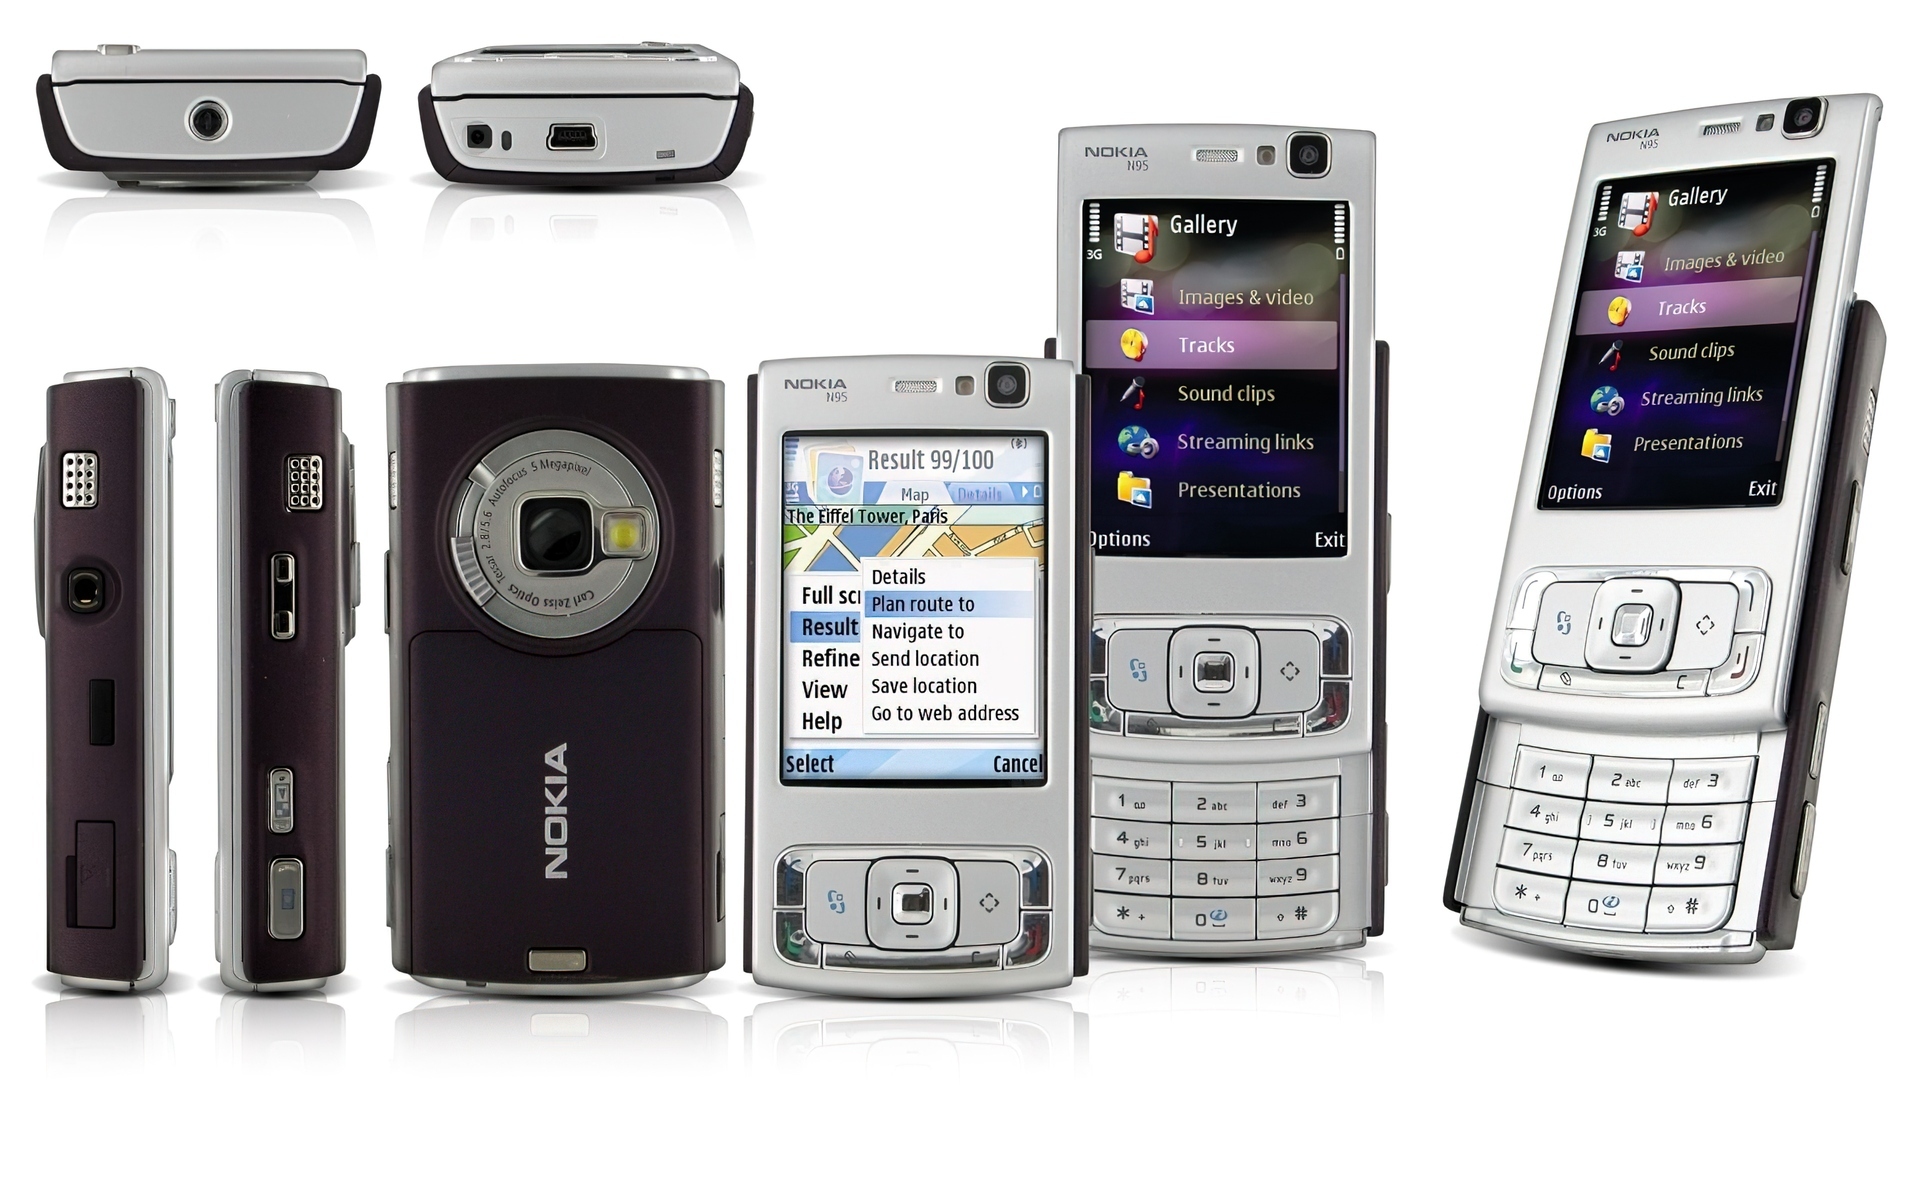 Nokia N95, Wszystkie strony